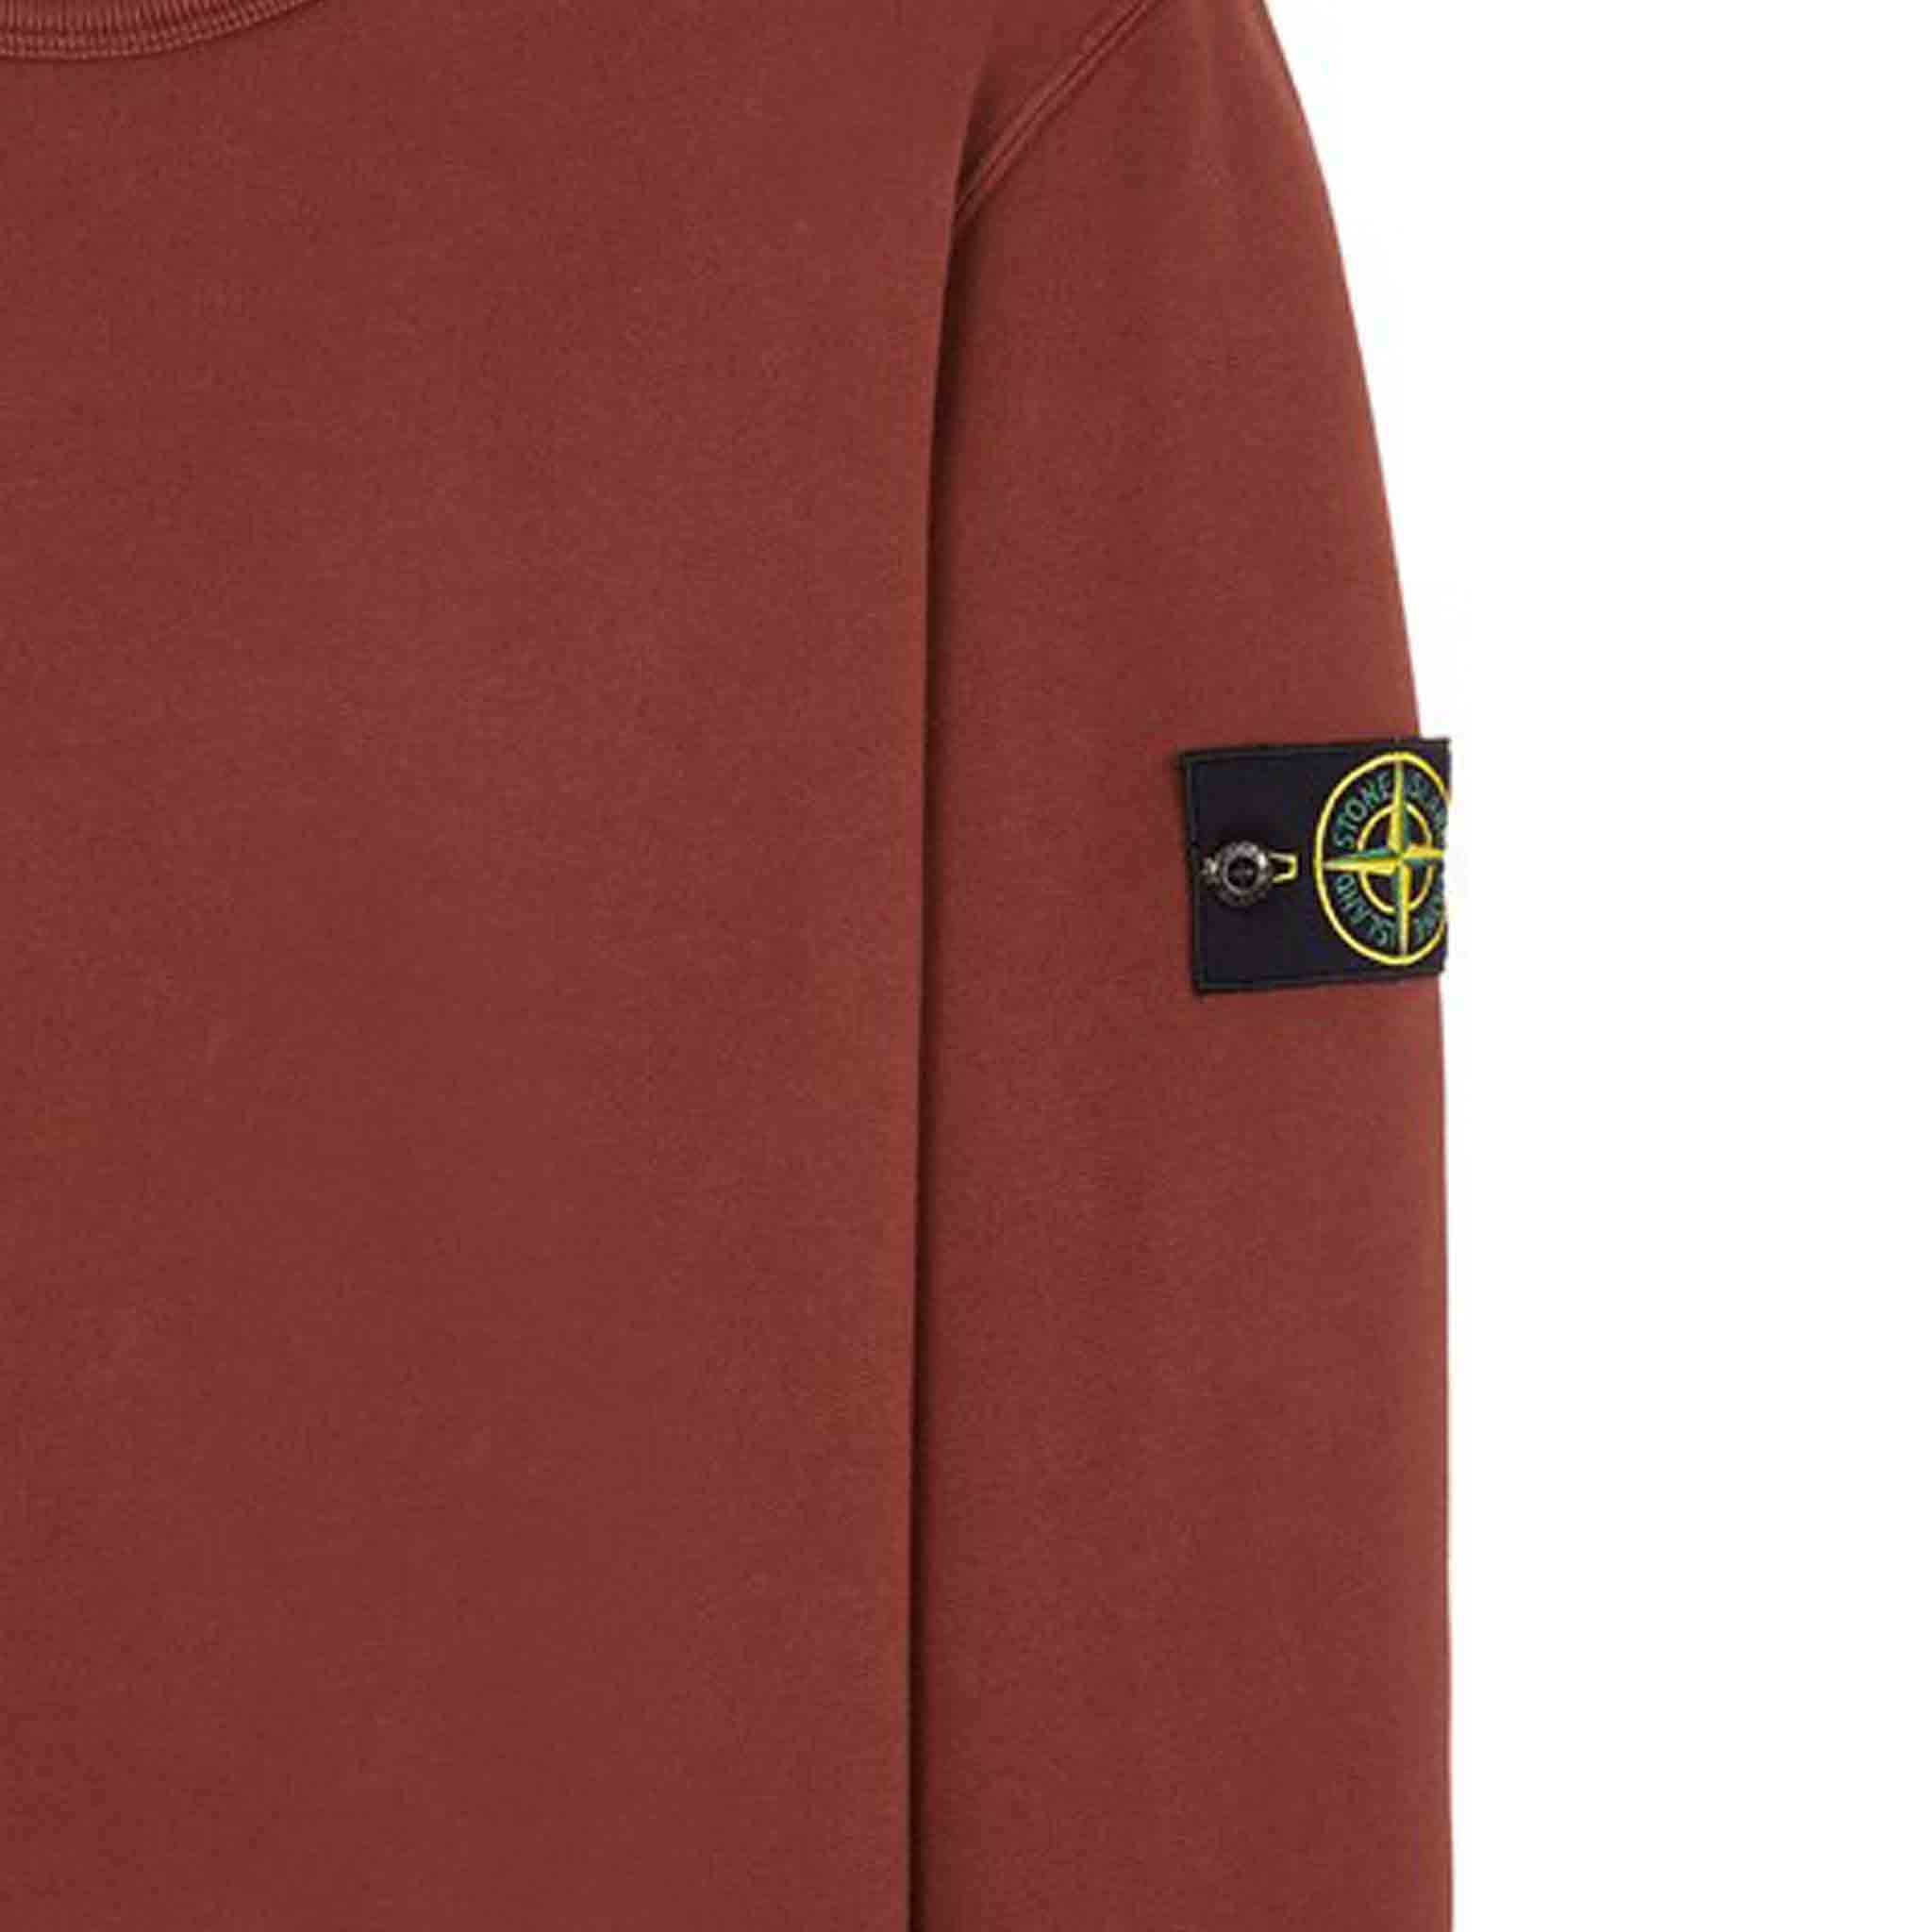 Stone Island Garment Dyed Crewneck Sweatshirt in Chestnut Brown